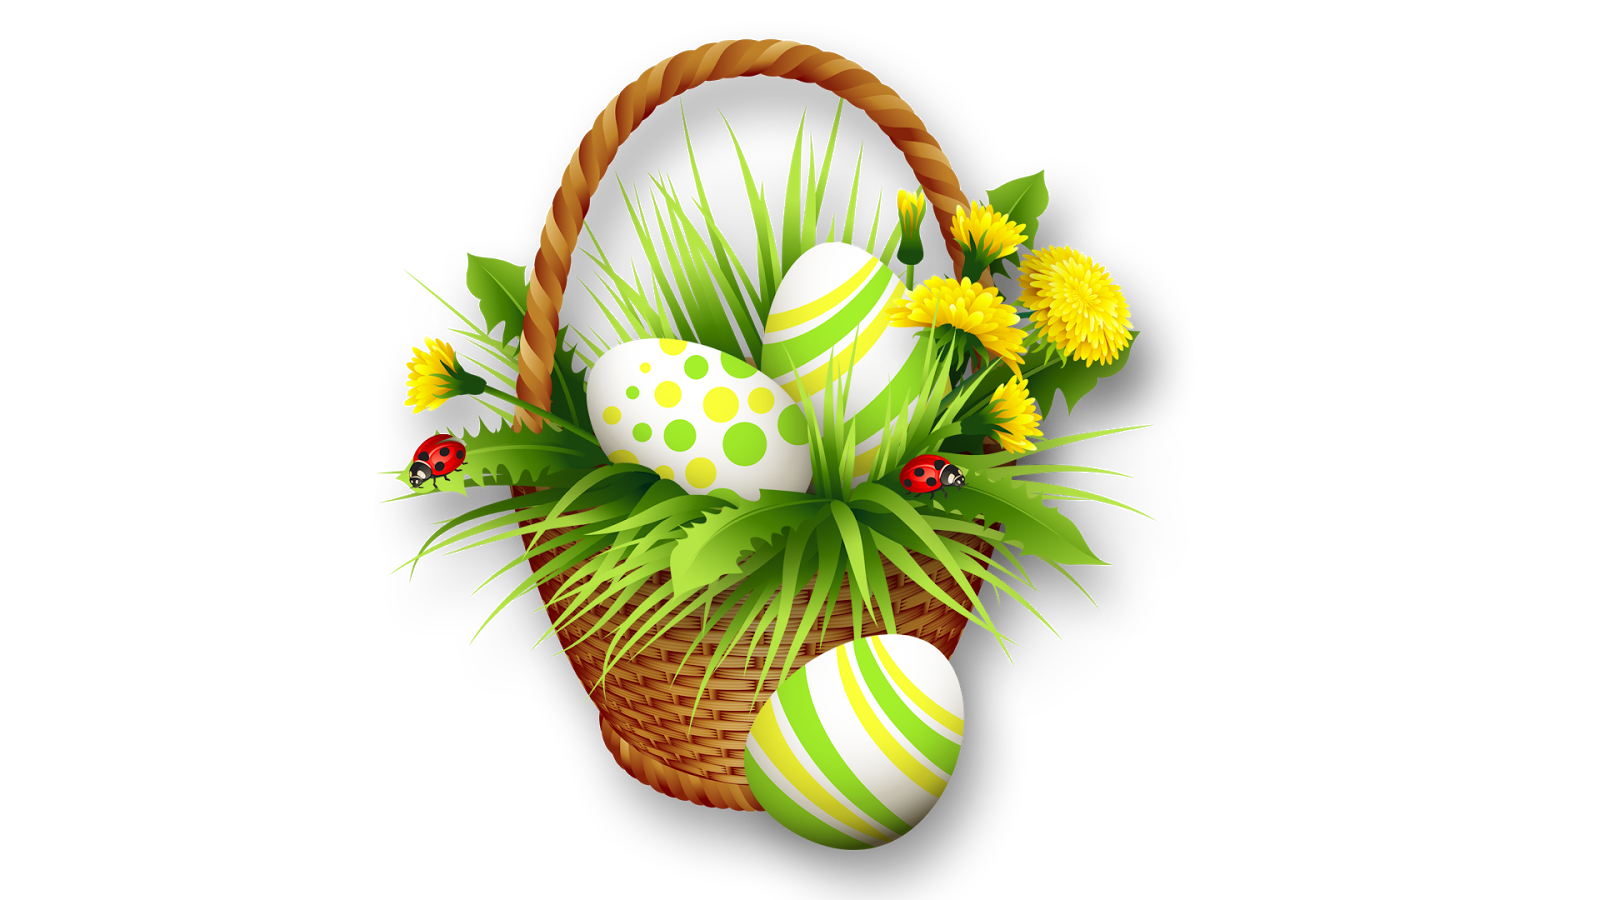 Easter Basket Bunny Png Clipart - Easter Eggs Basket Transparent Background  - 1600x900 Wallpaper 